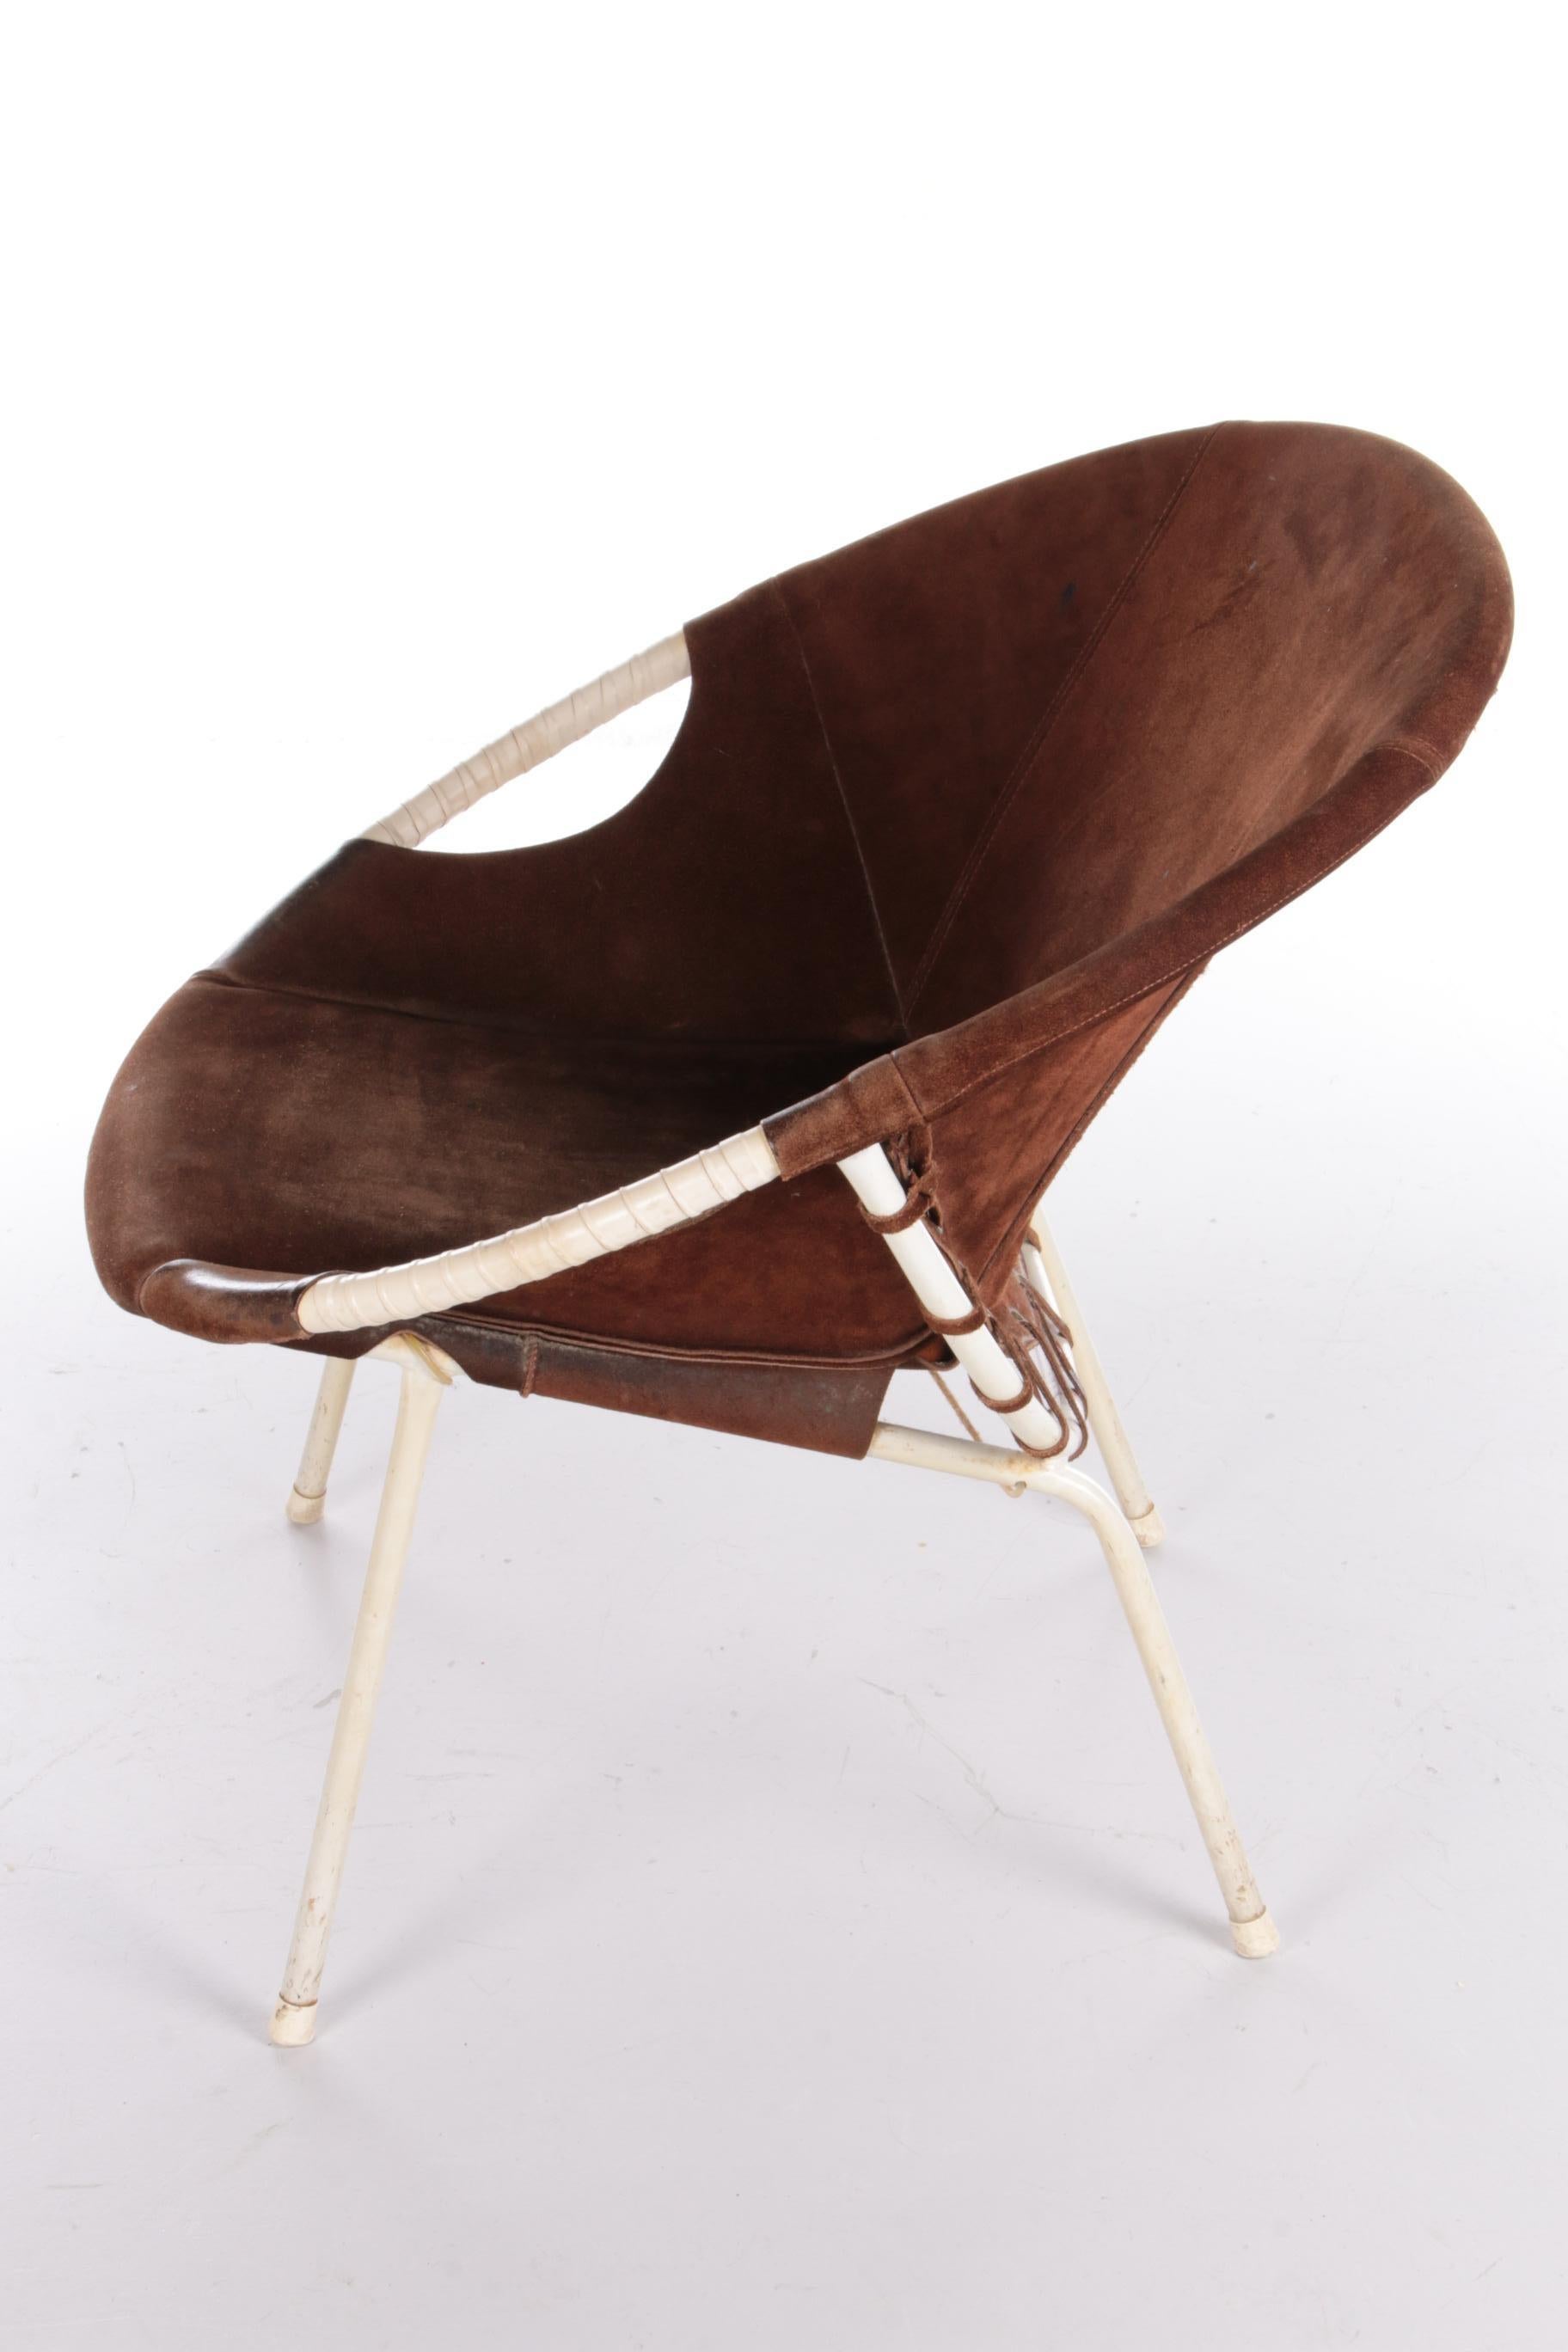 Mid-20th Century Vintage Balloon Chair Design by Lusch Erzeugnis, 1960s